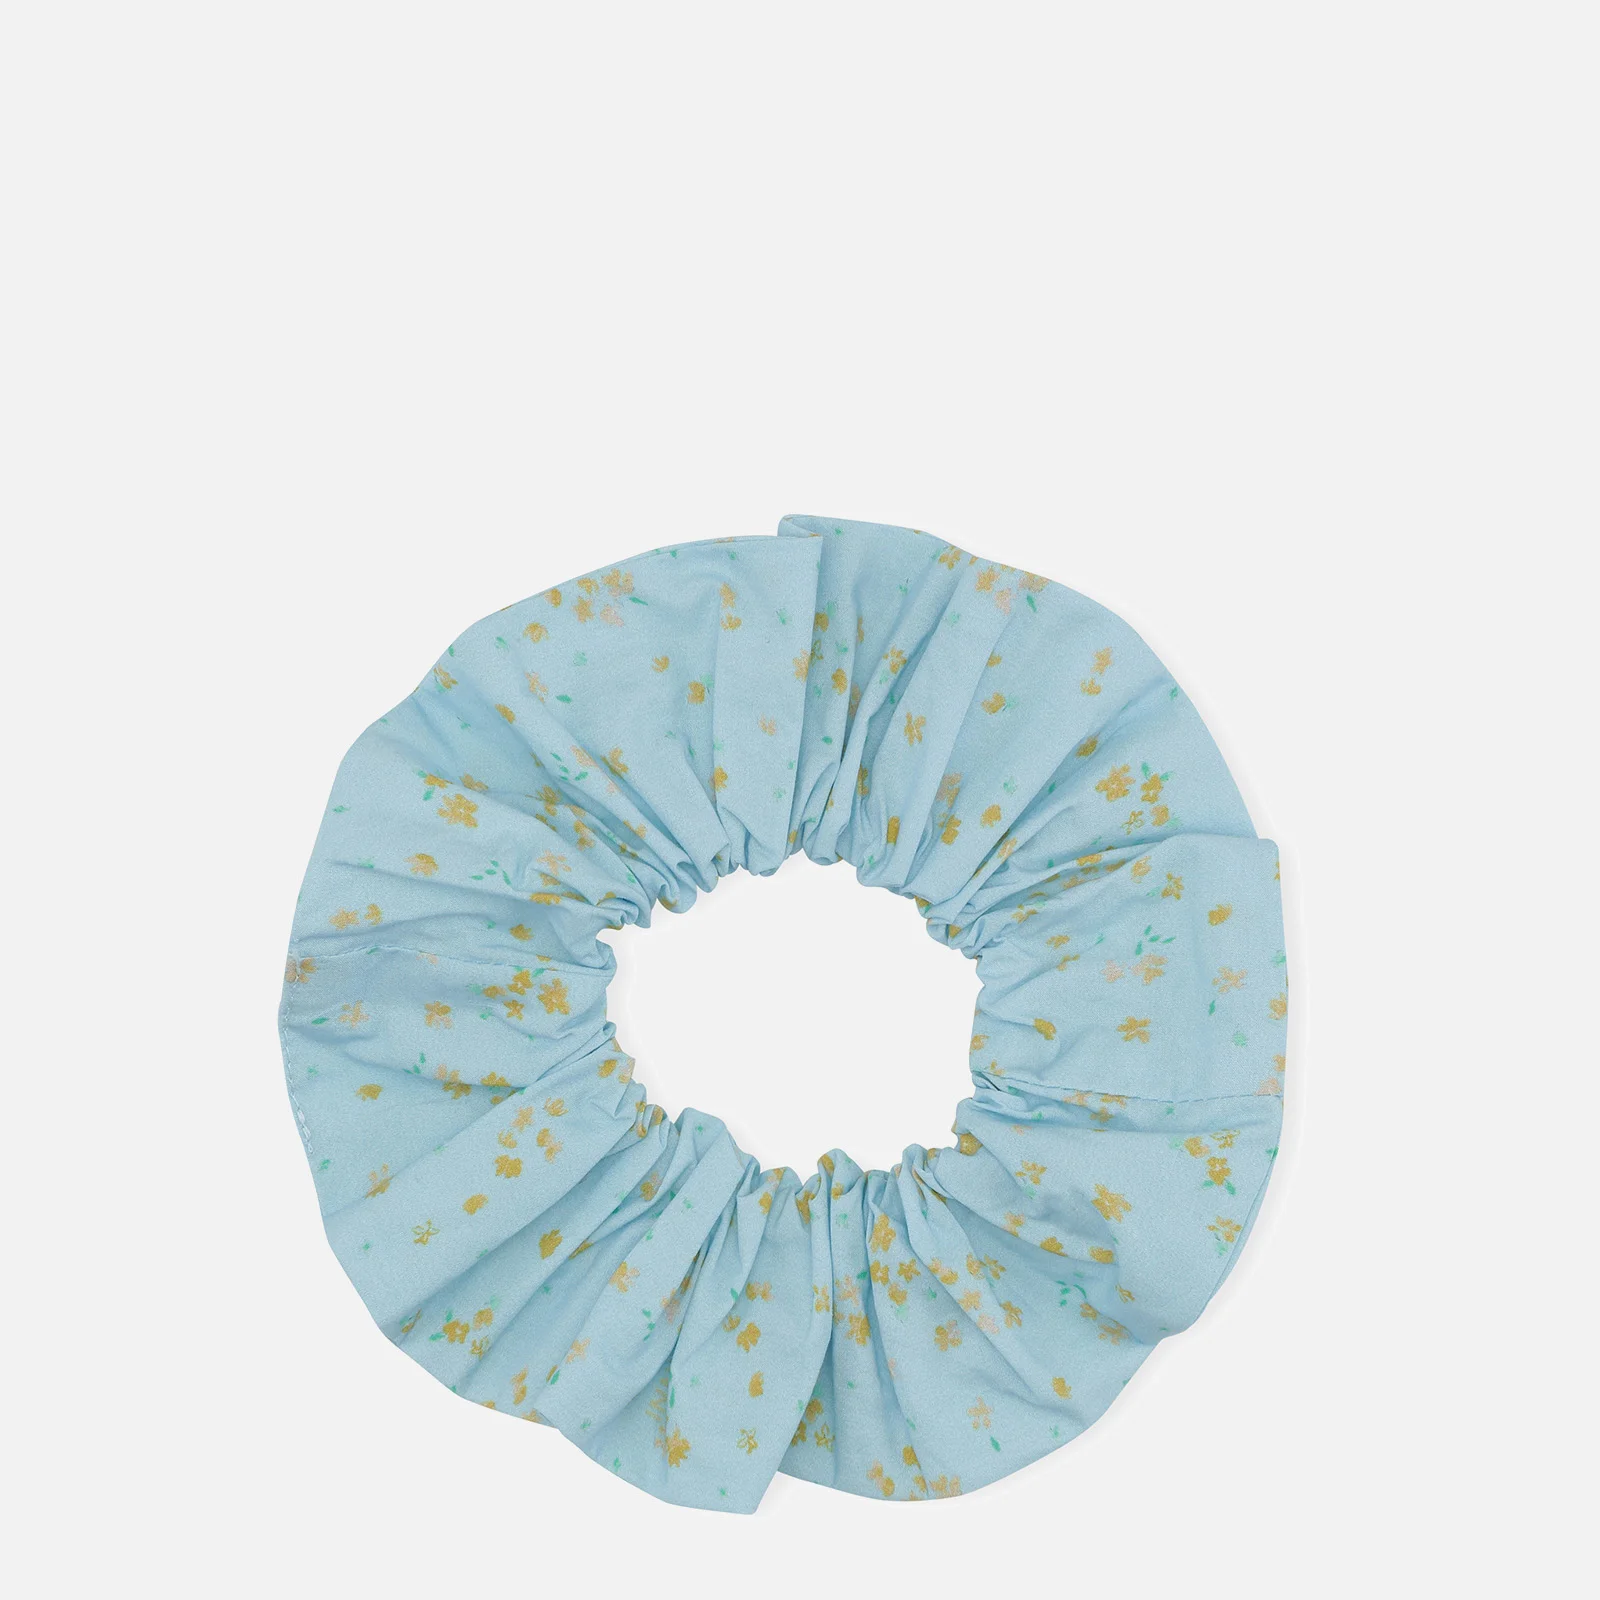 Ganni Women's Floral Print Cotton Scrunchie - Corydalis Blue Image 1